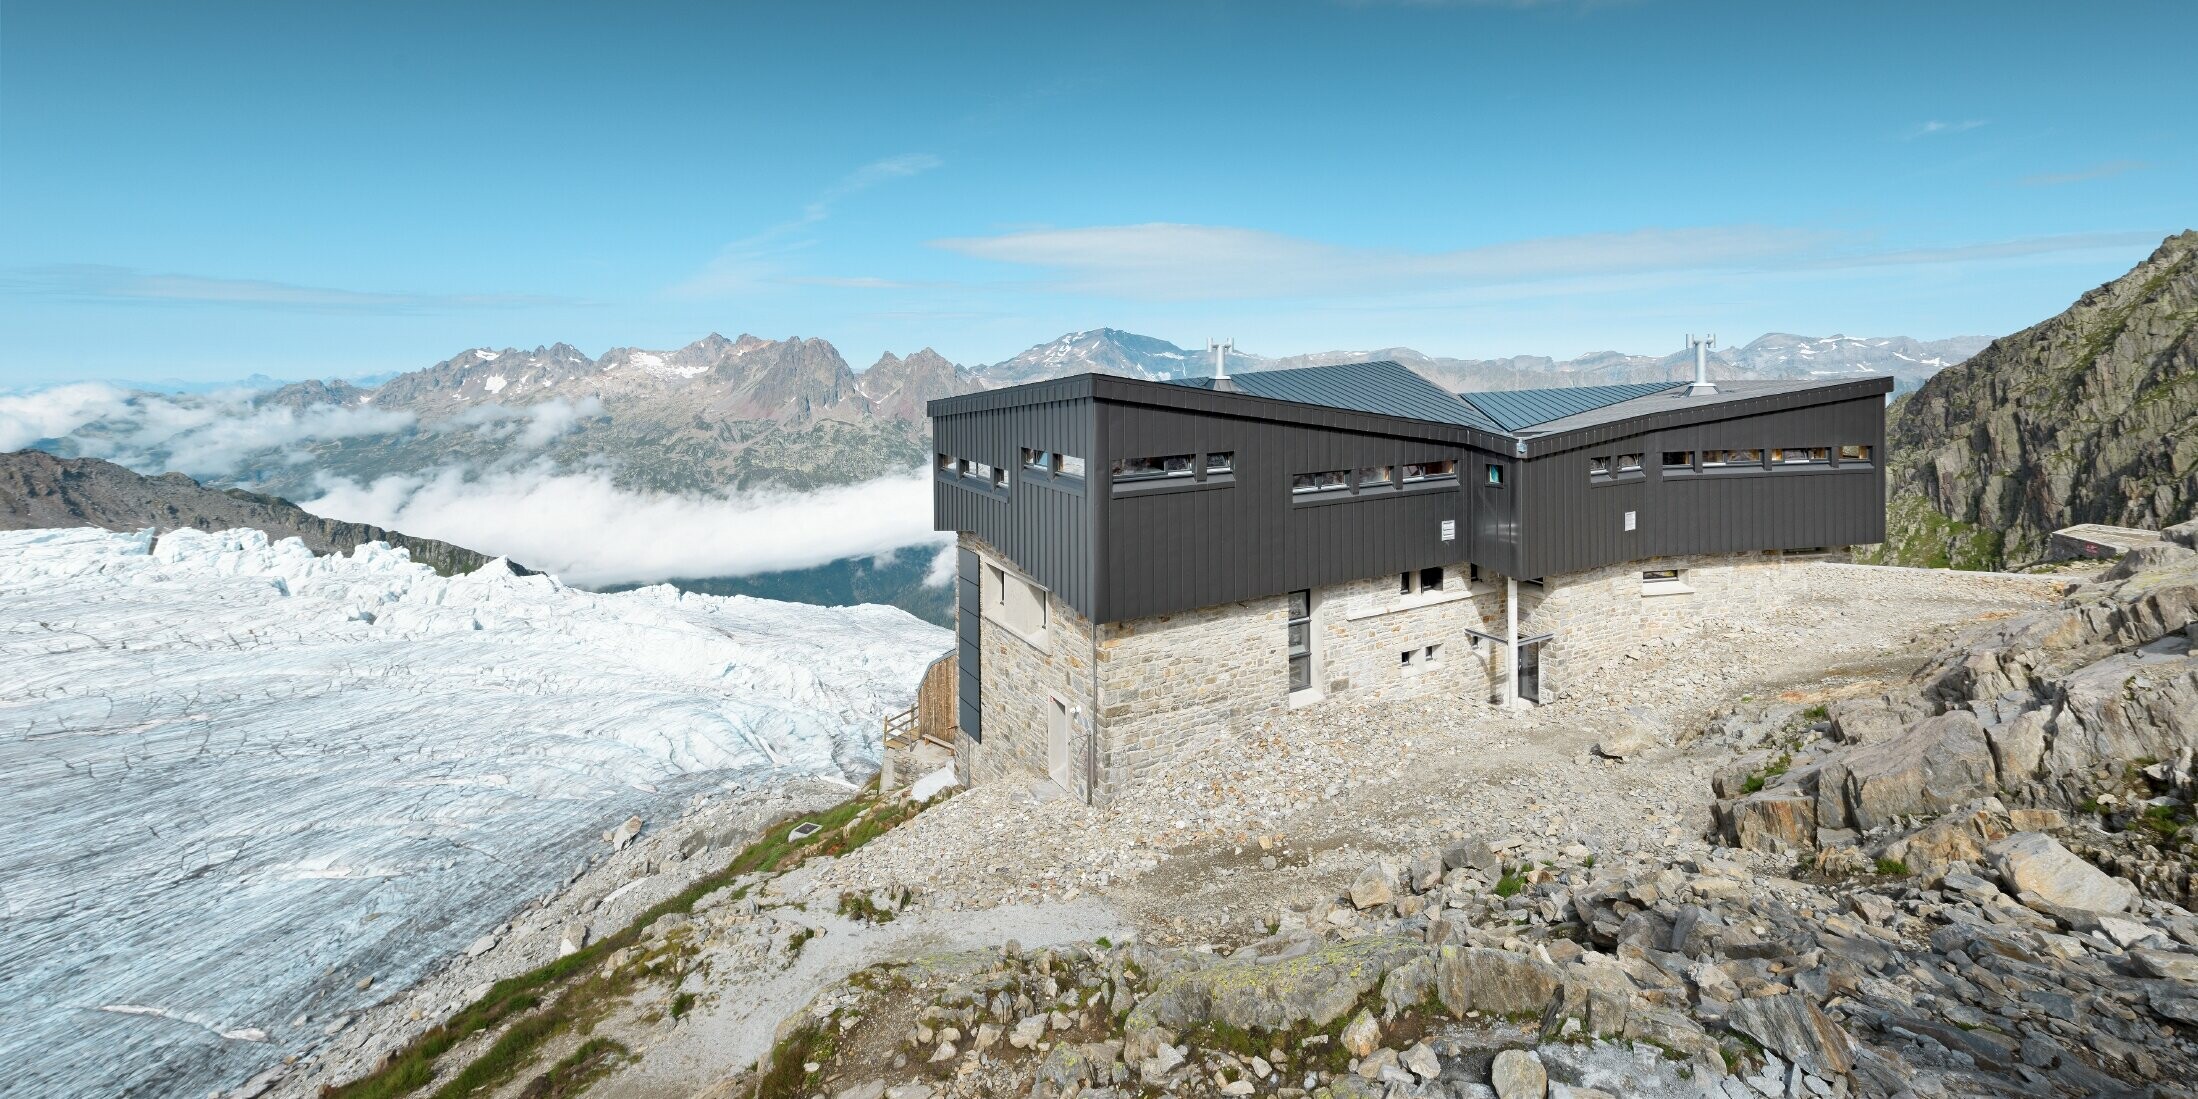 Refuge Albert 1er am Mont Blanc mit PREFALZ in Schwarzgrau am Dach und der Fassade.